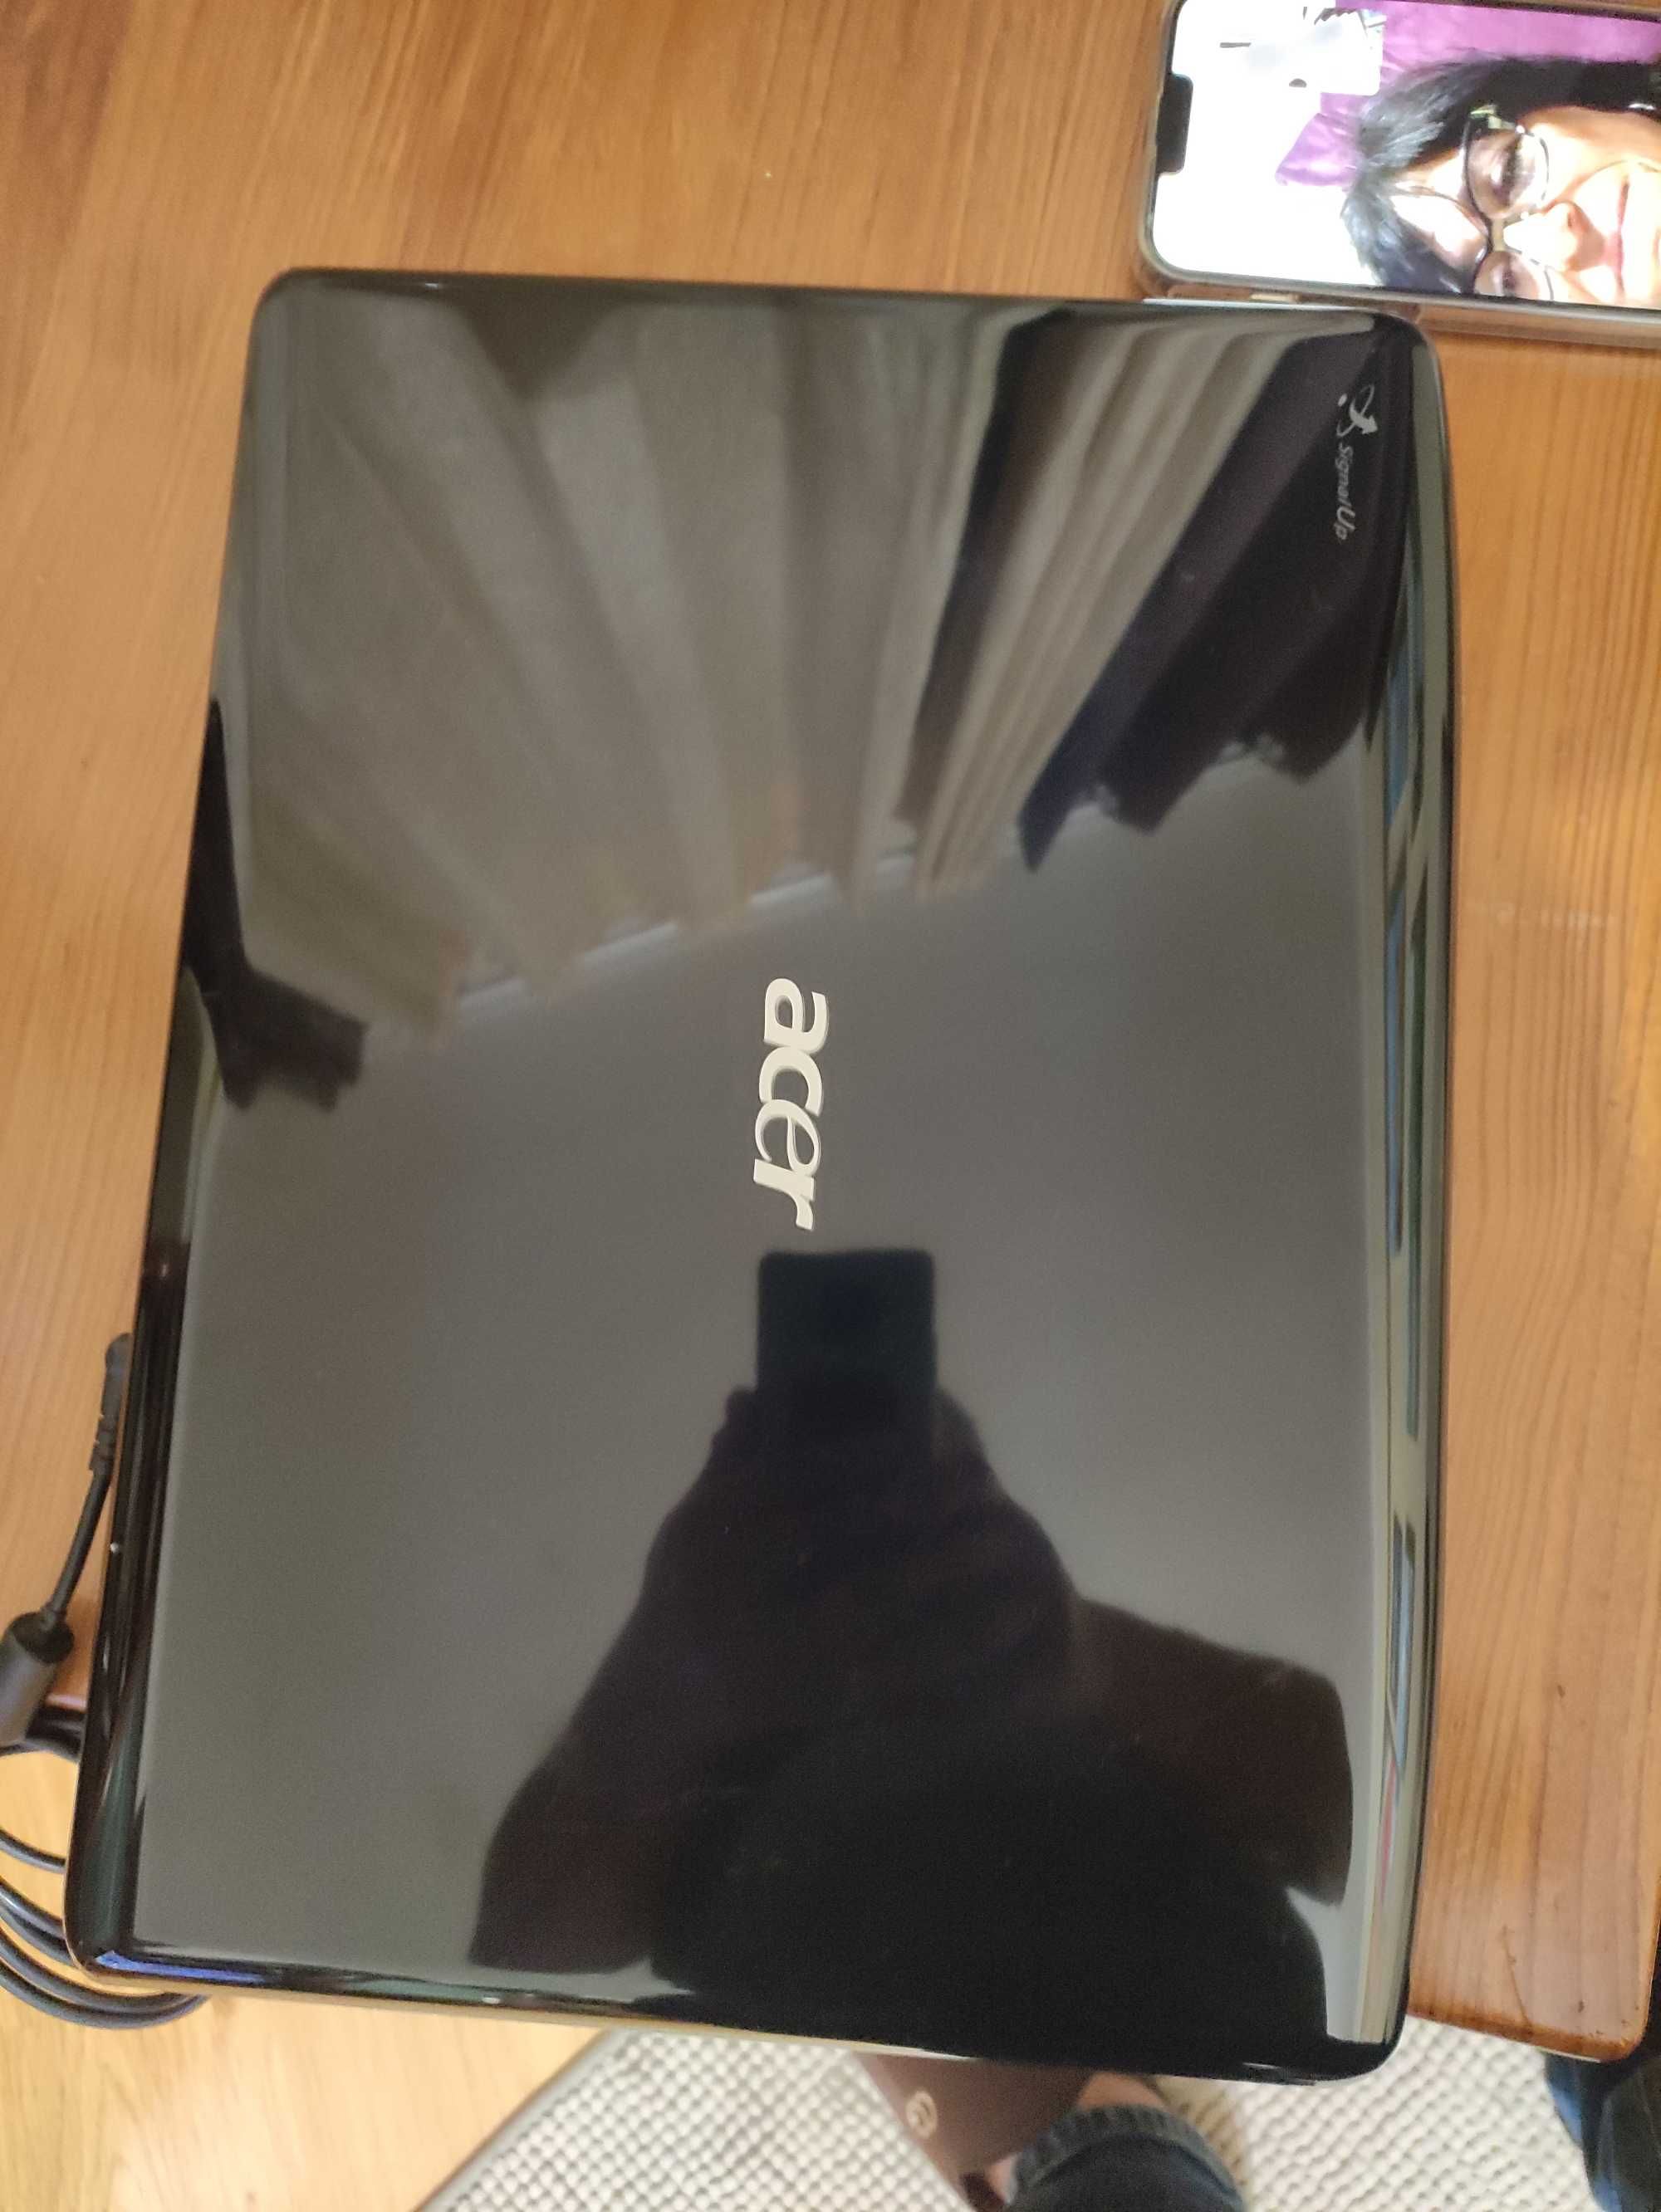 Portátil Acer aspire 5930g reinicia